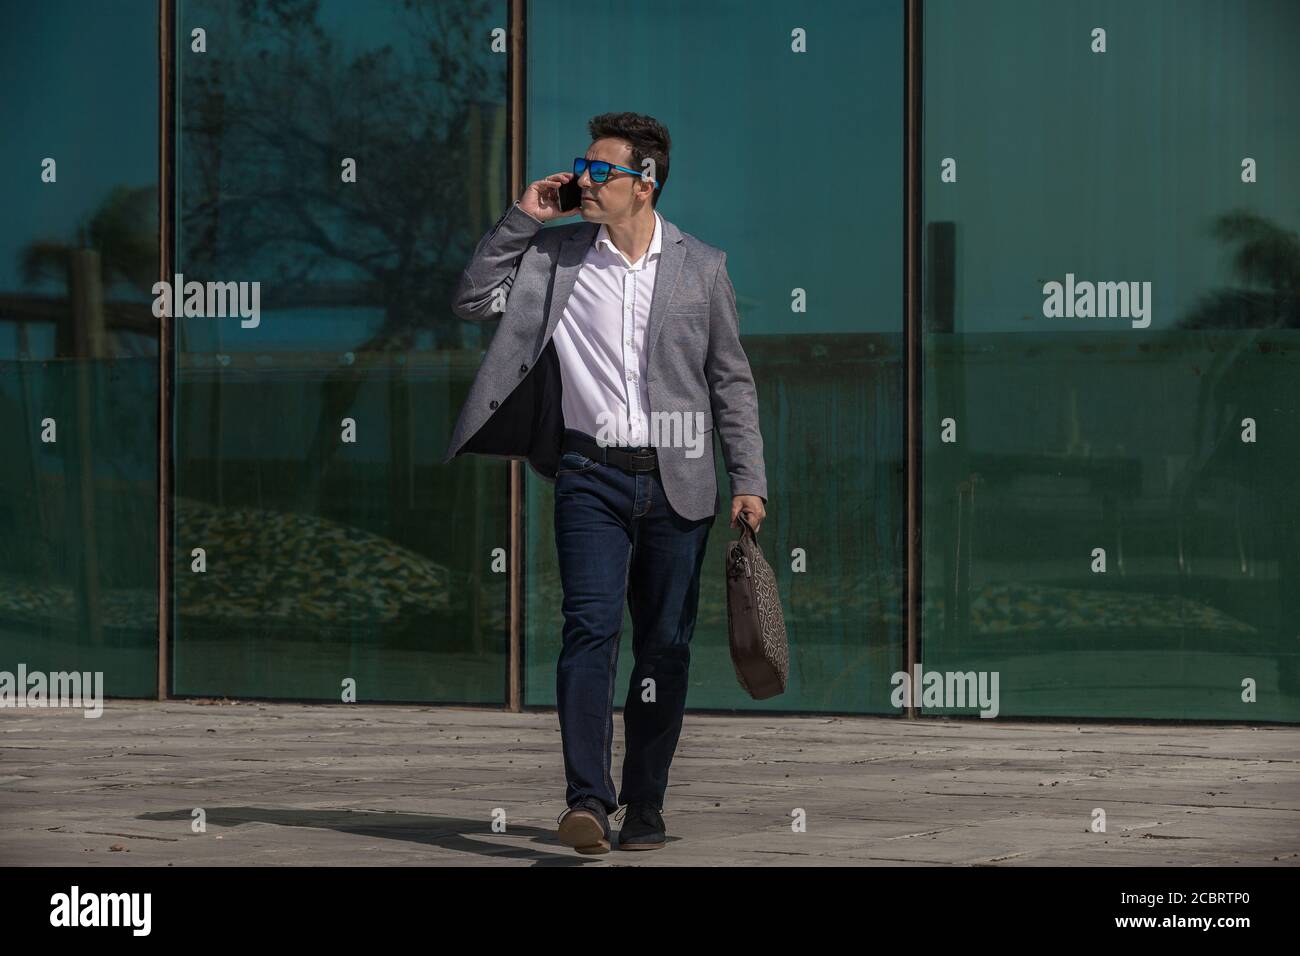 Hombre adulto de cuerpo entero con ropa informal elegante hablando smartphone y mirar lejos mientras camina cerca de un edificio de vidrio centro de la ciudad Foto de stock